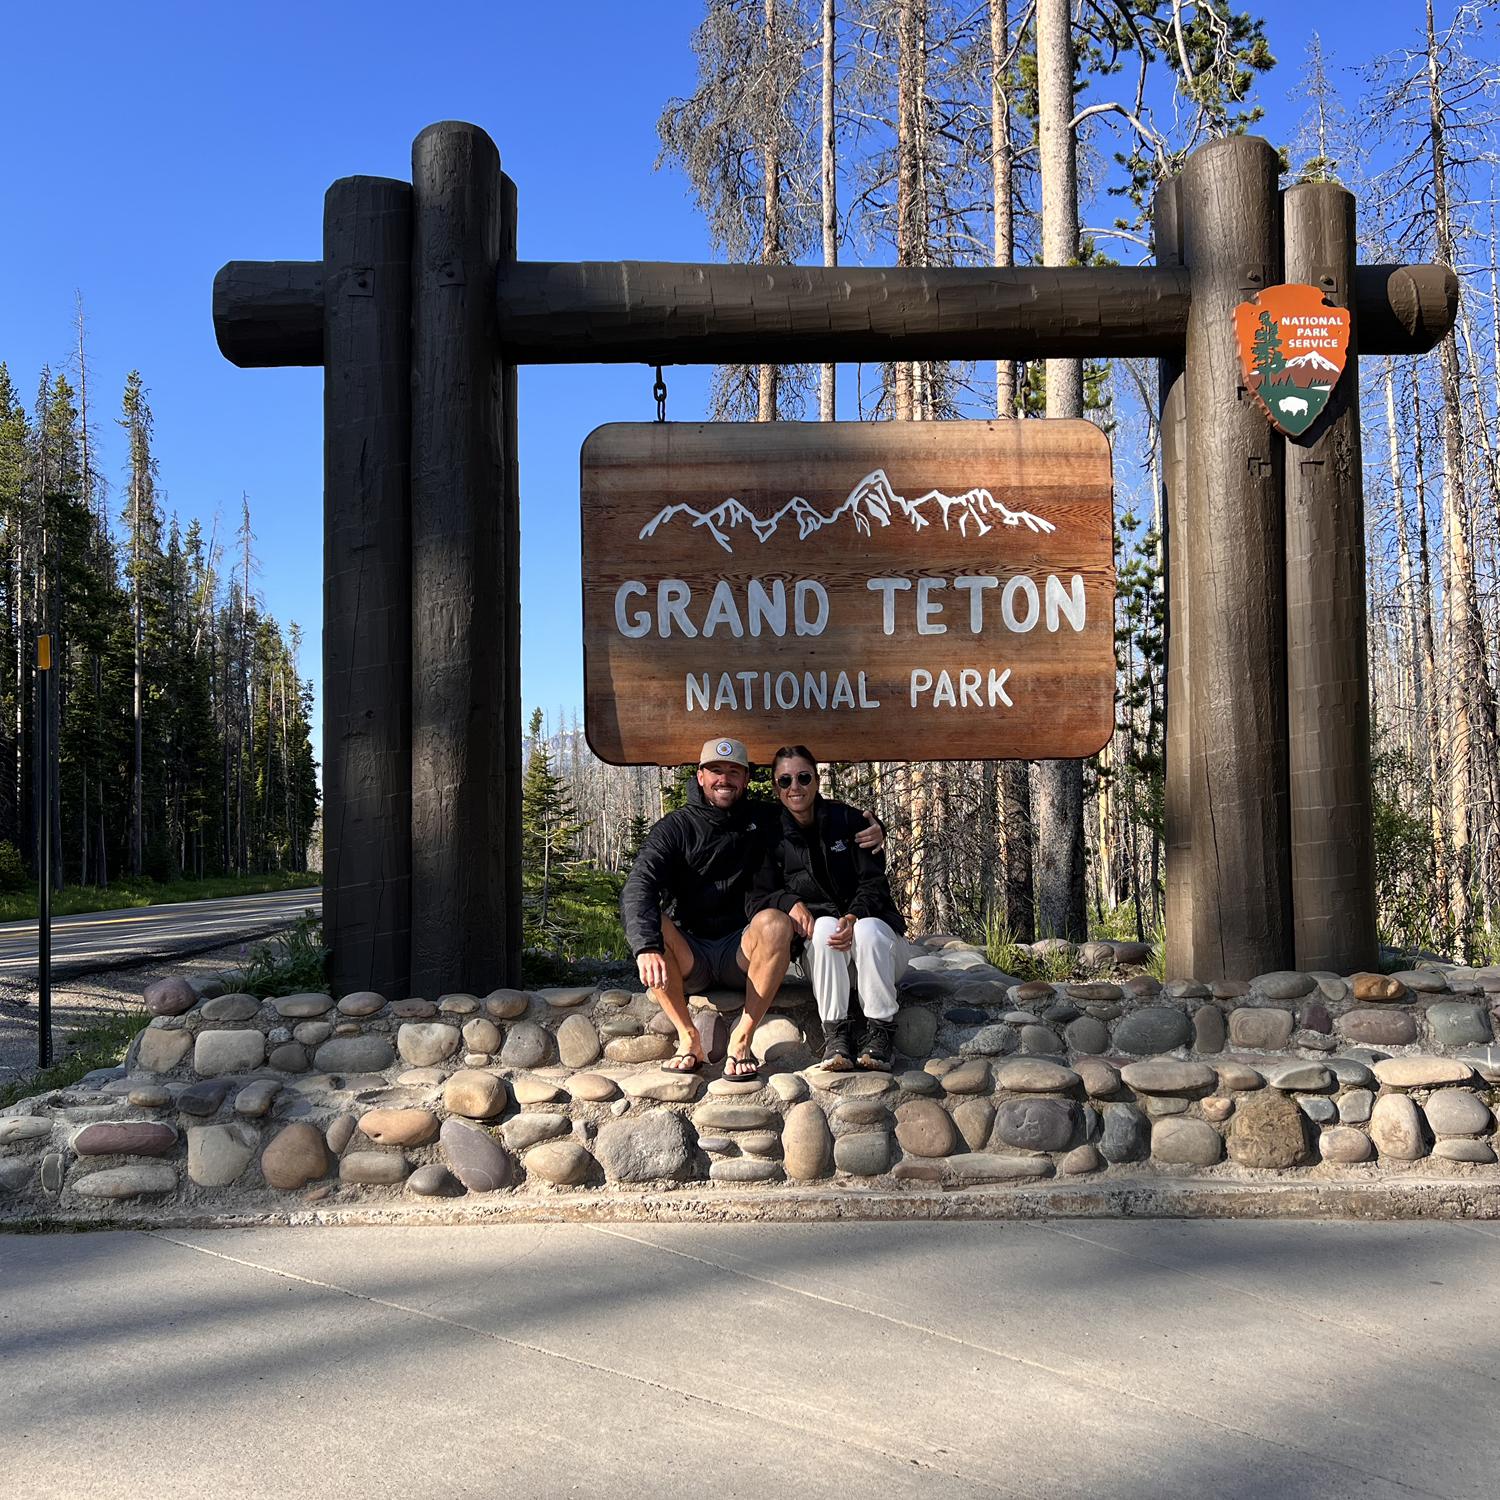 Grand Teton National Park!